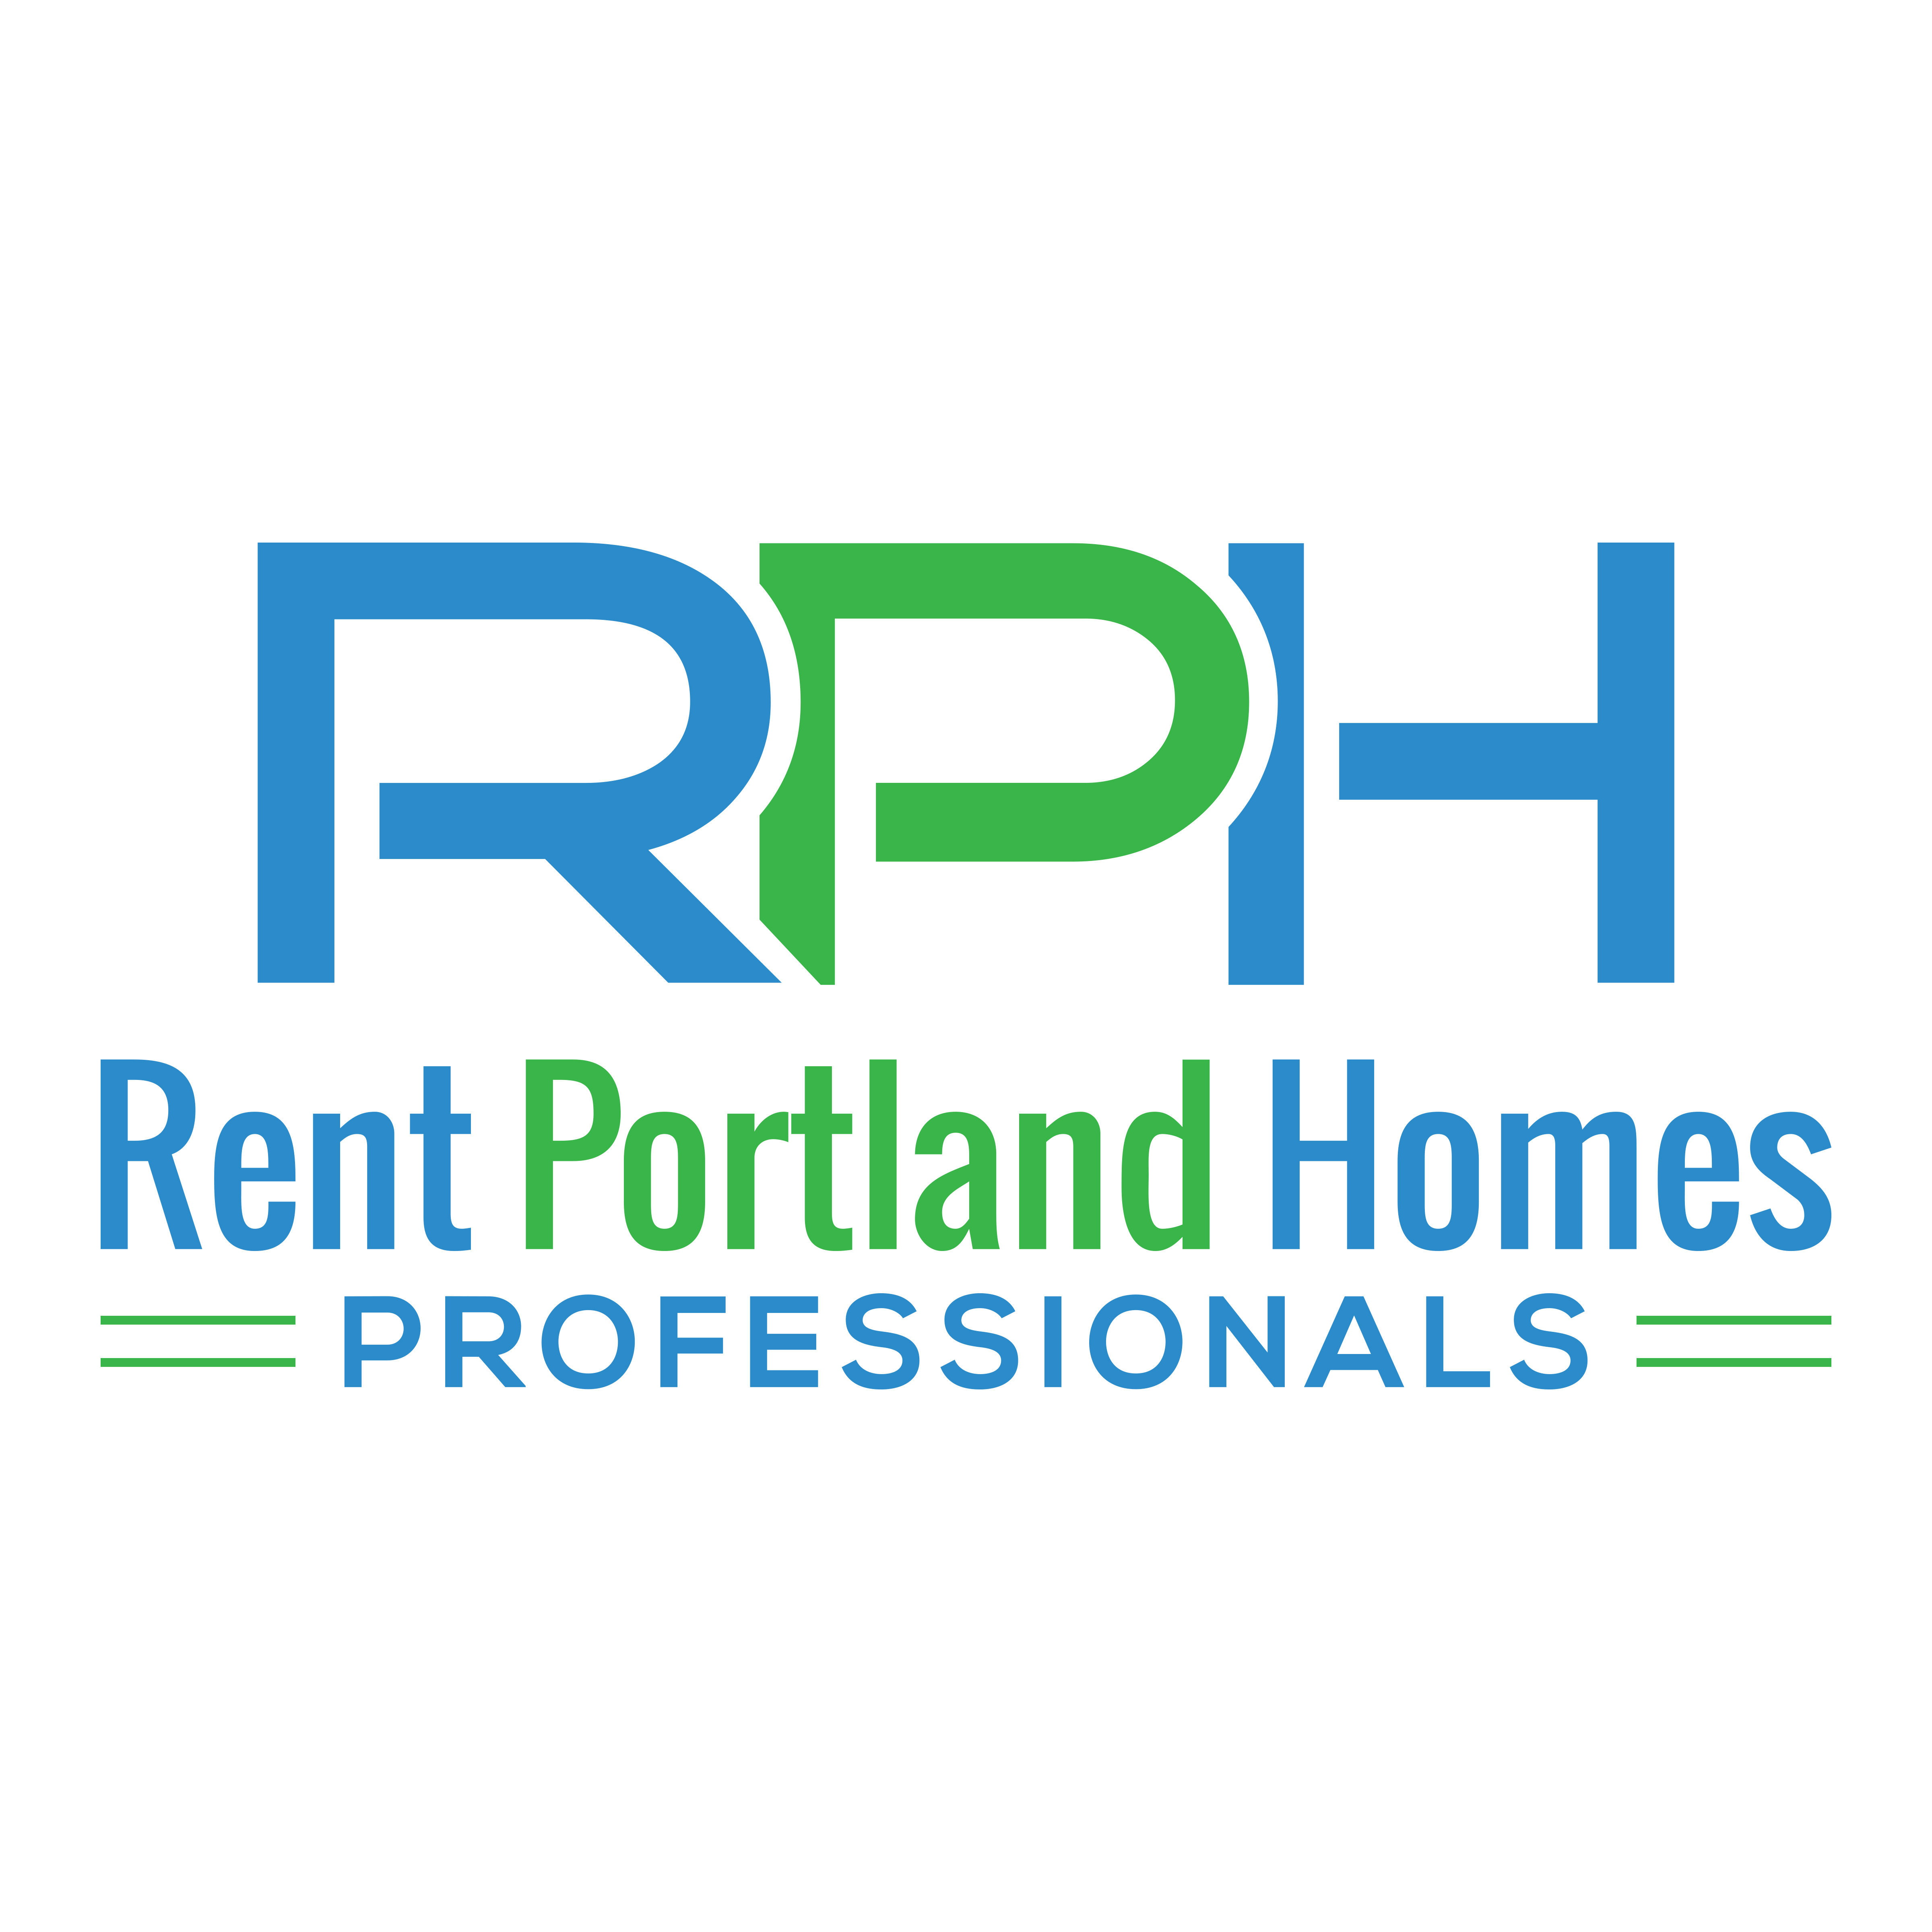 Rent Portland Homes Professionals logo